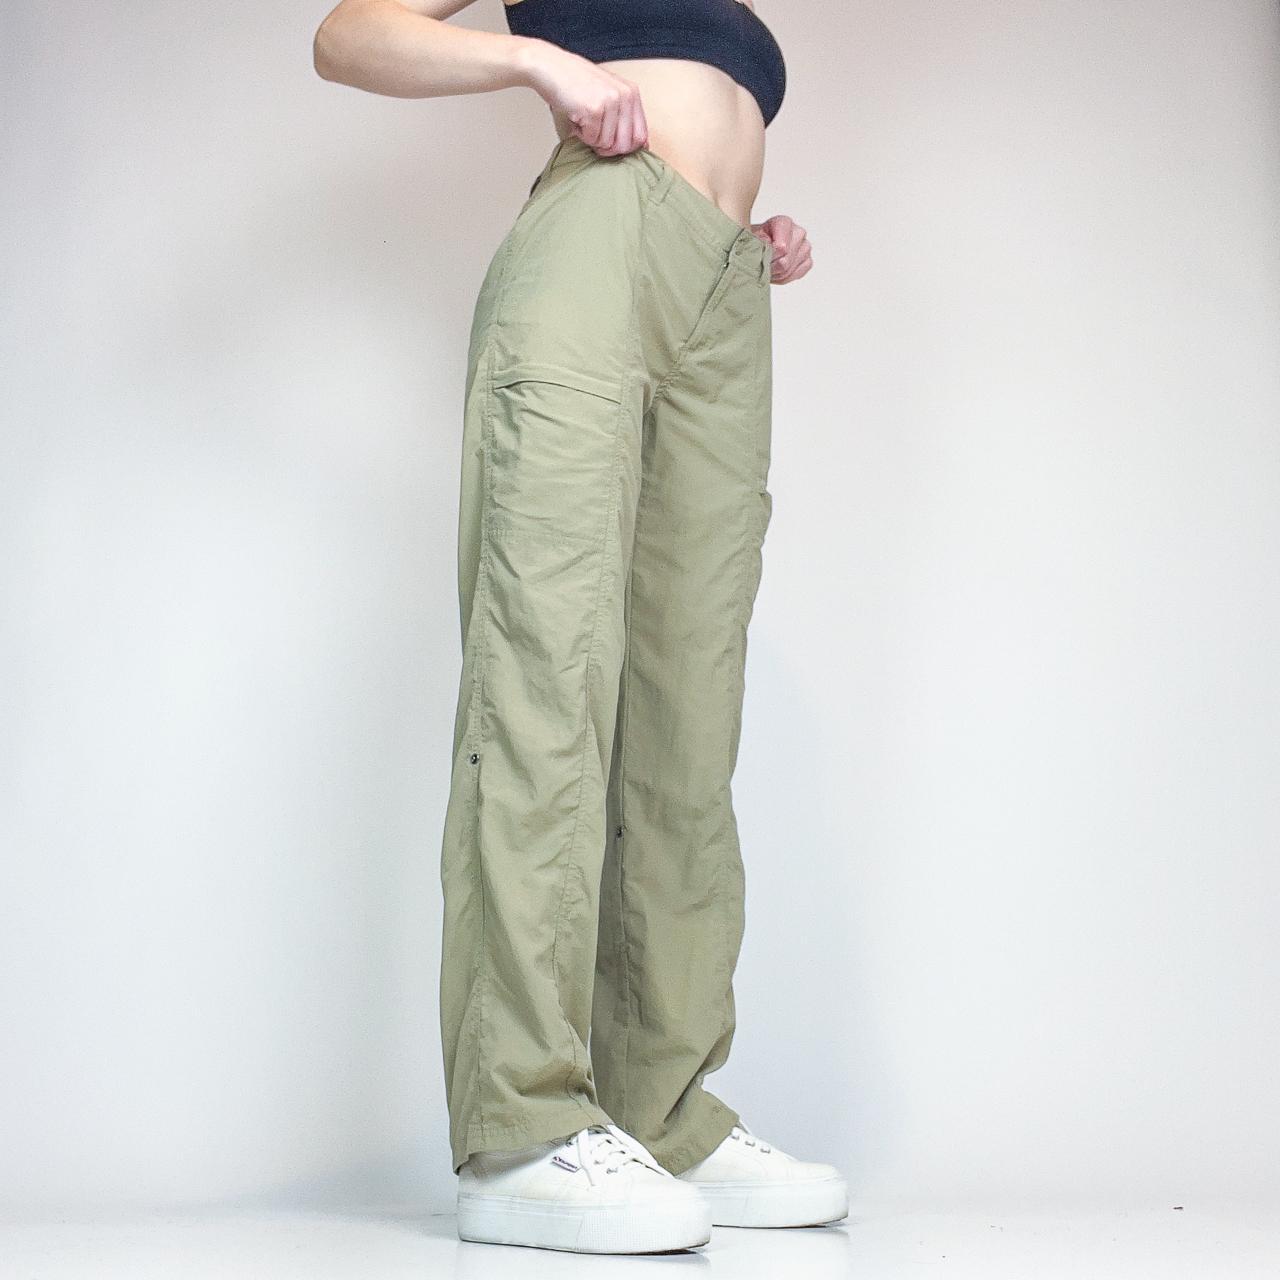 ExOfficio Women's Khaki and Tan Trousers (3)